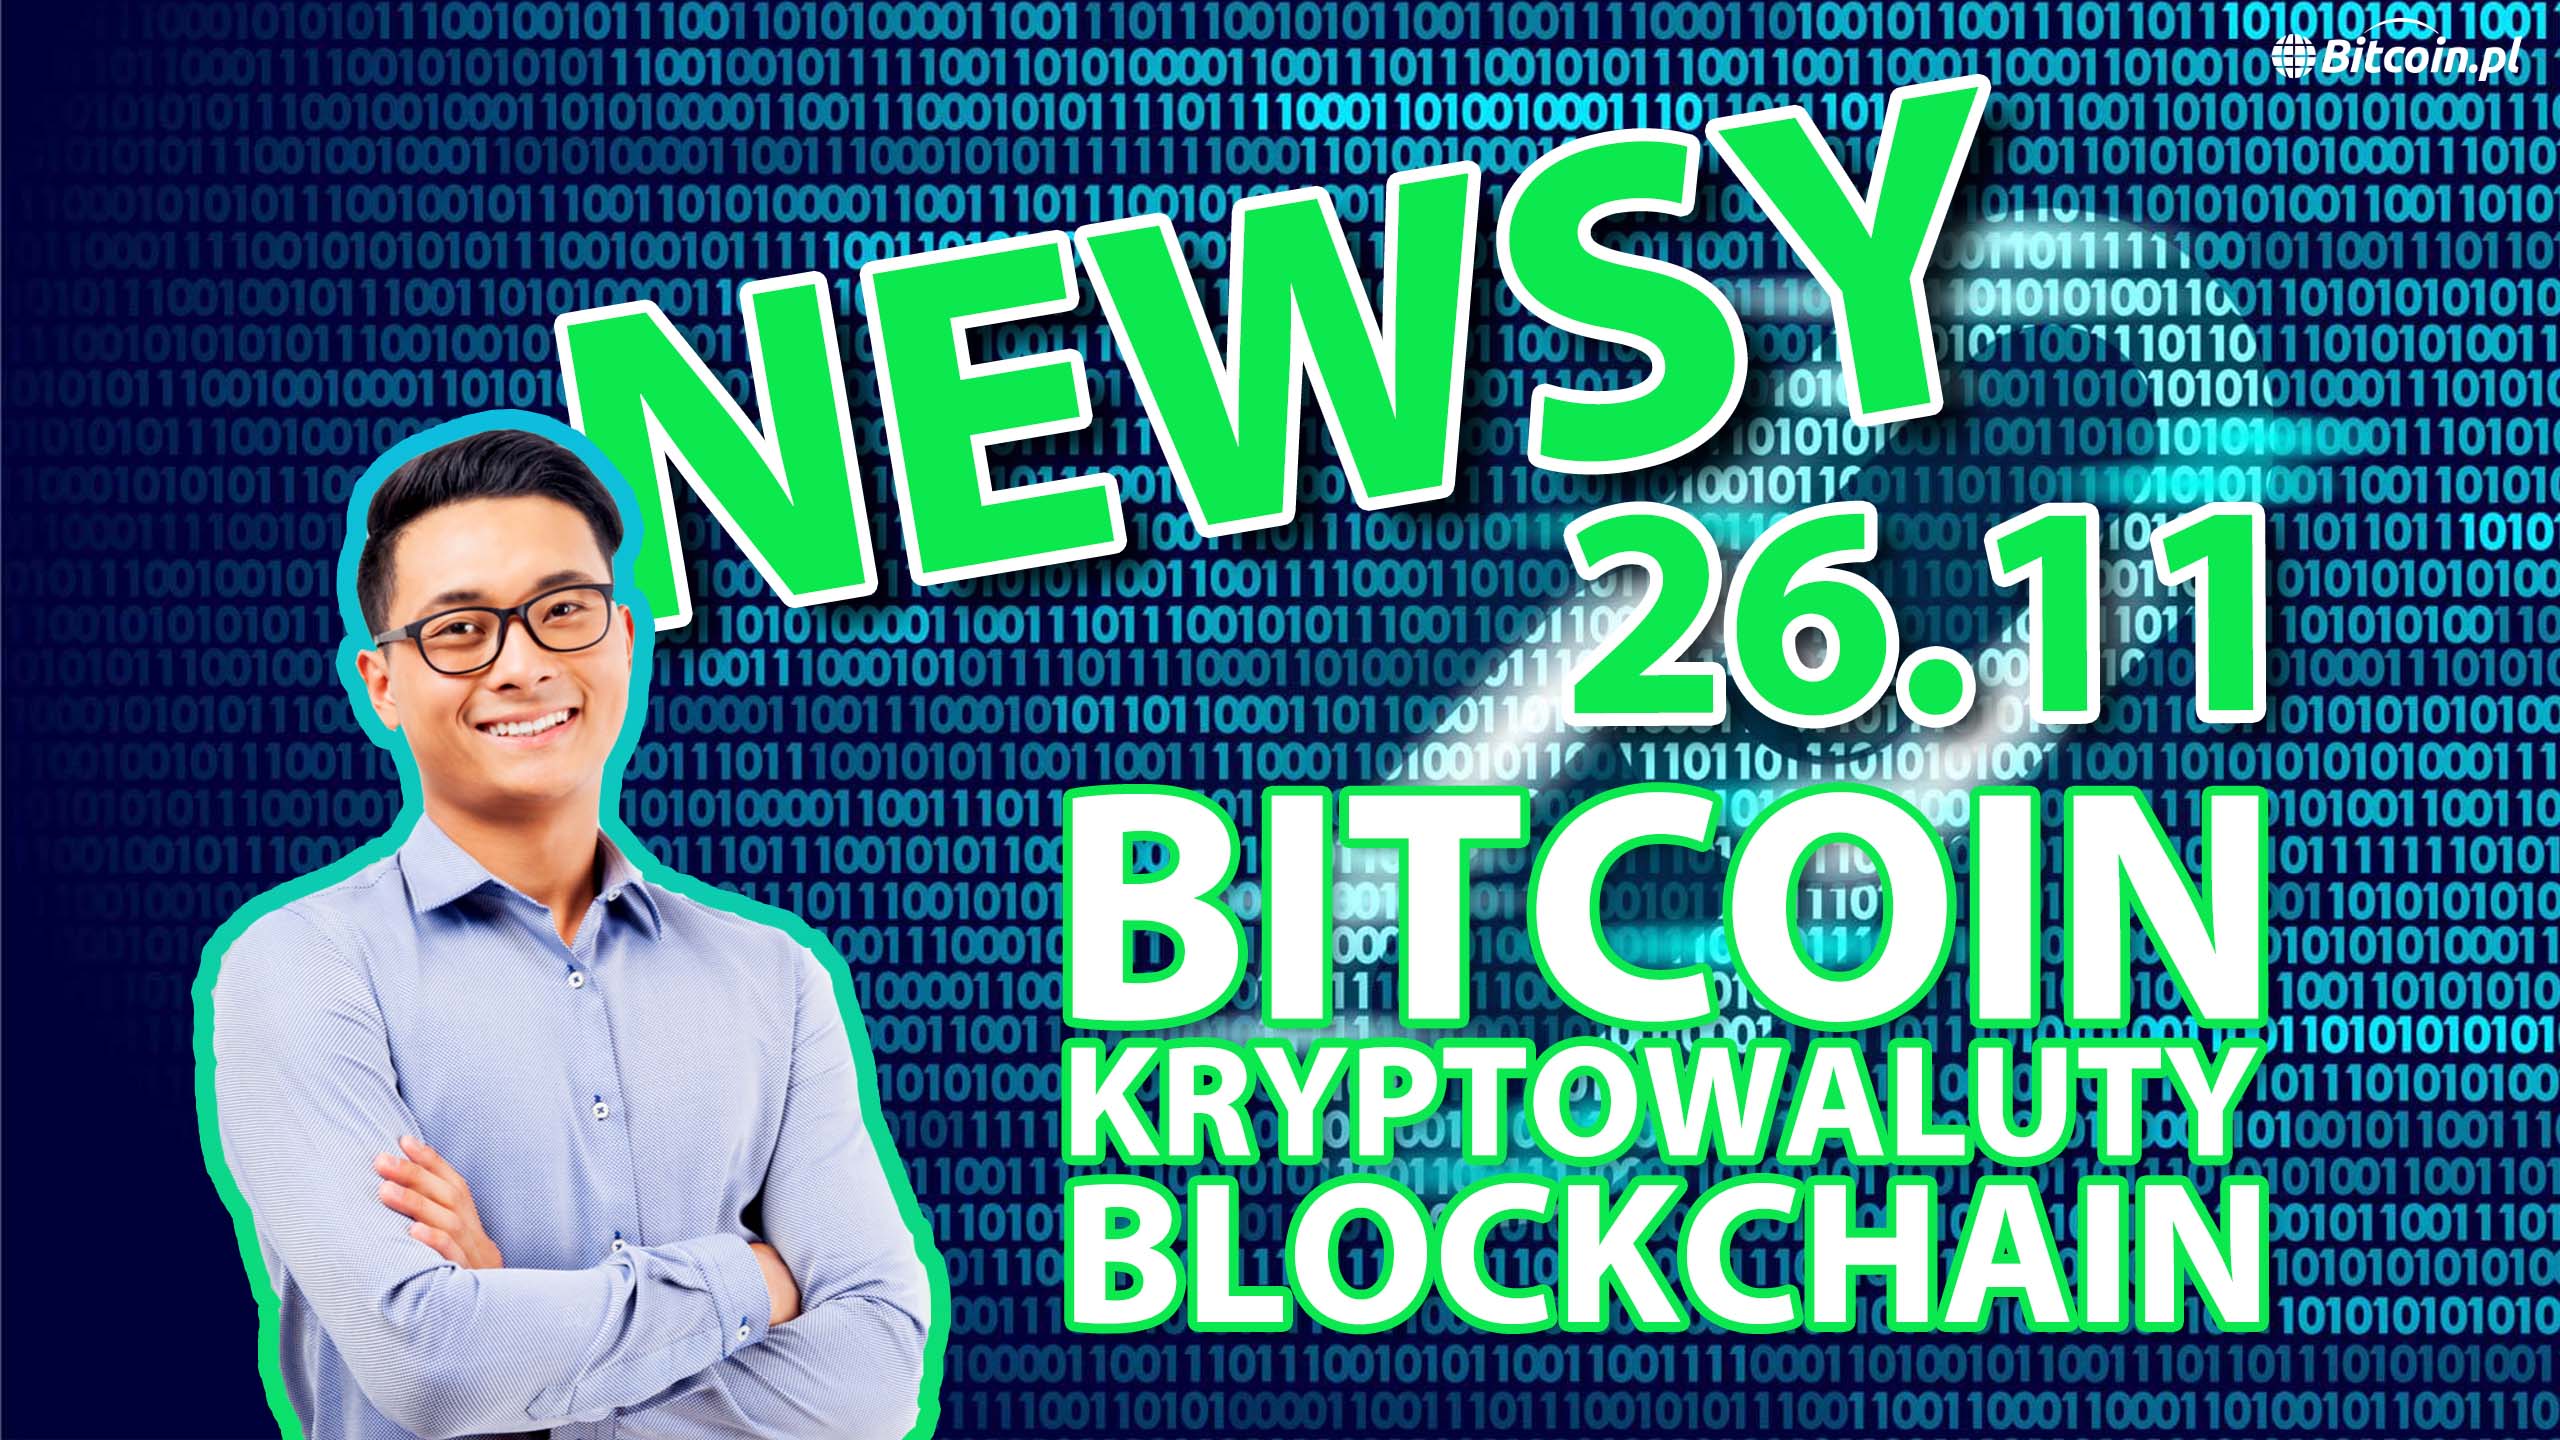 2 wiadomości Bitcoin kryptowaluty i blockchain 26.11